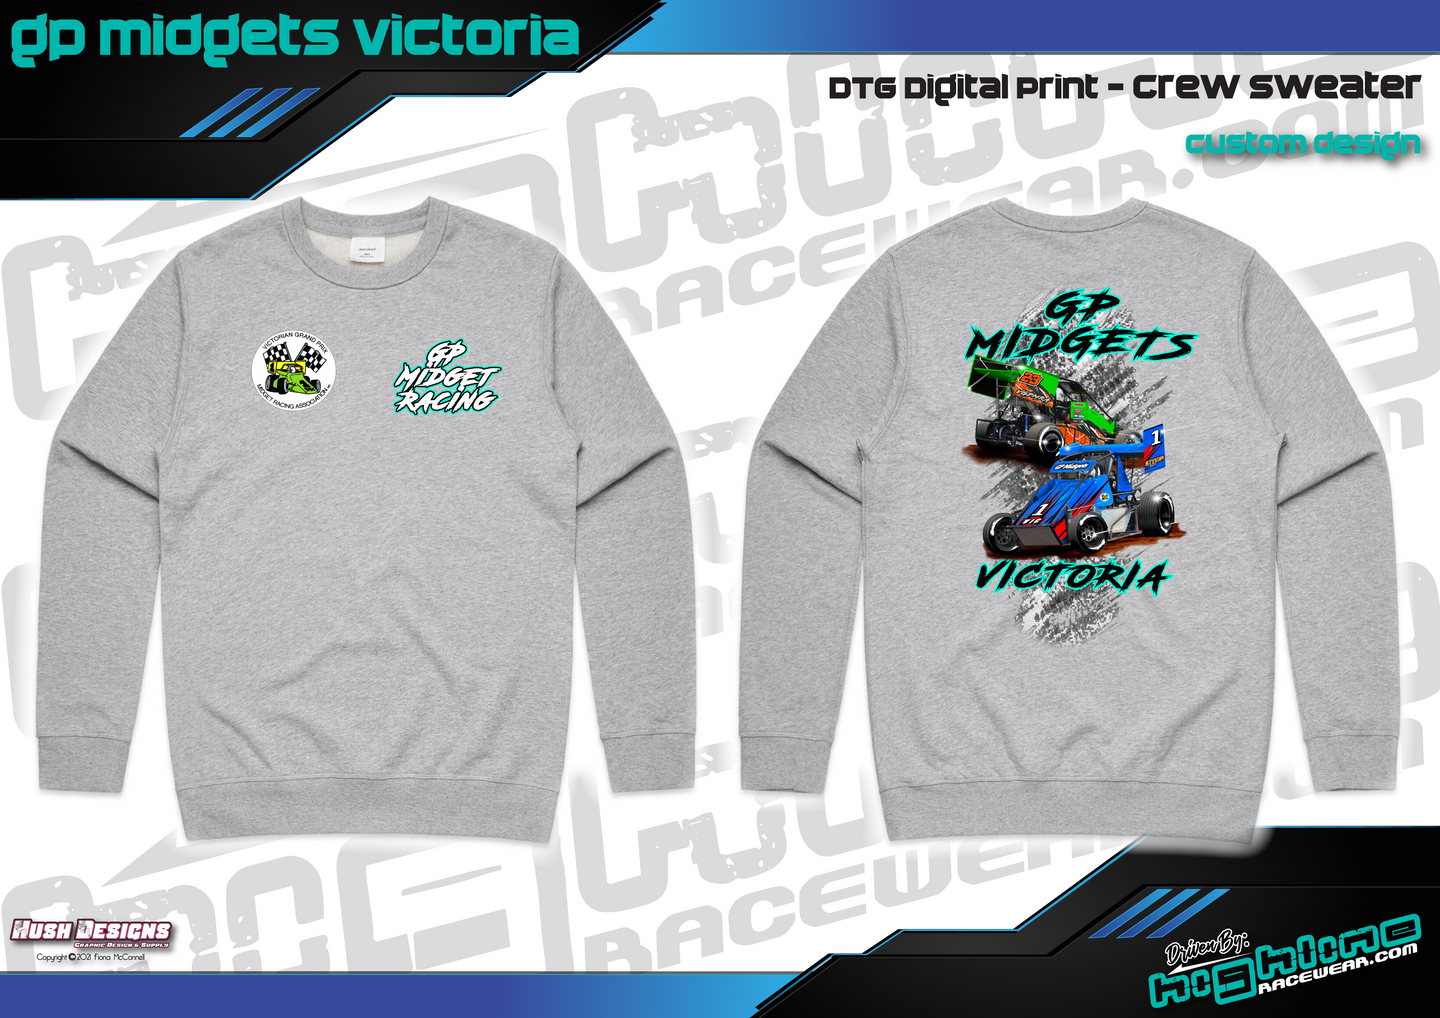 Crew Sweater - GP MIDGETS Victoria